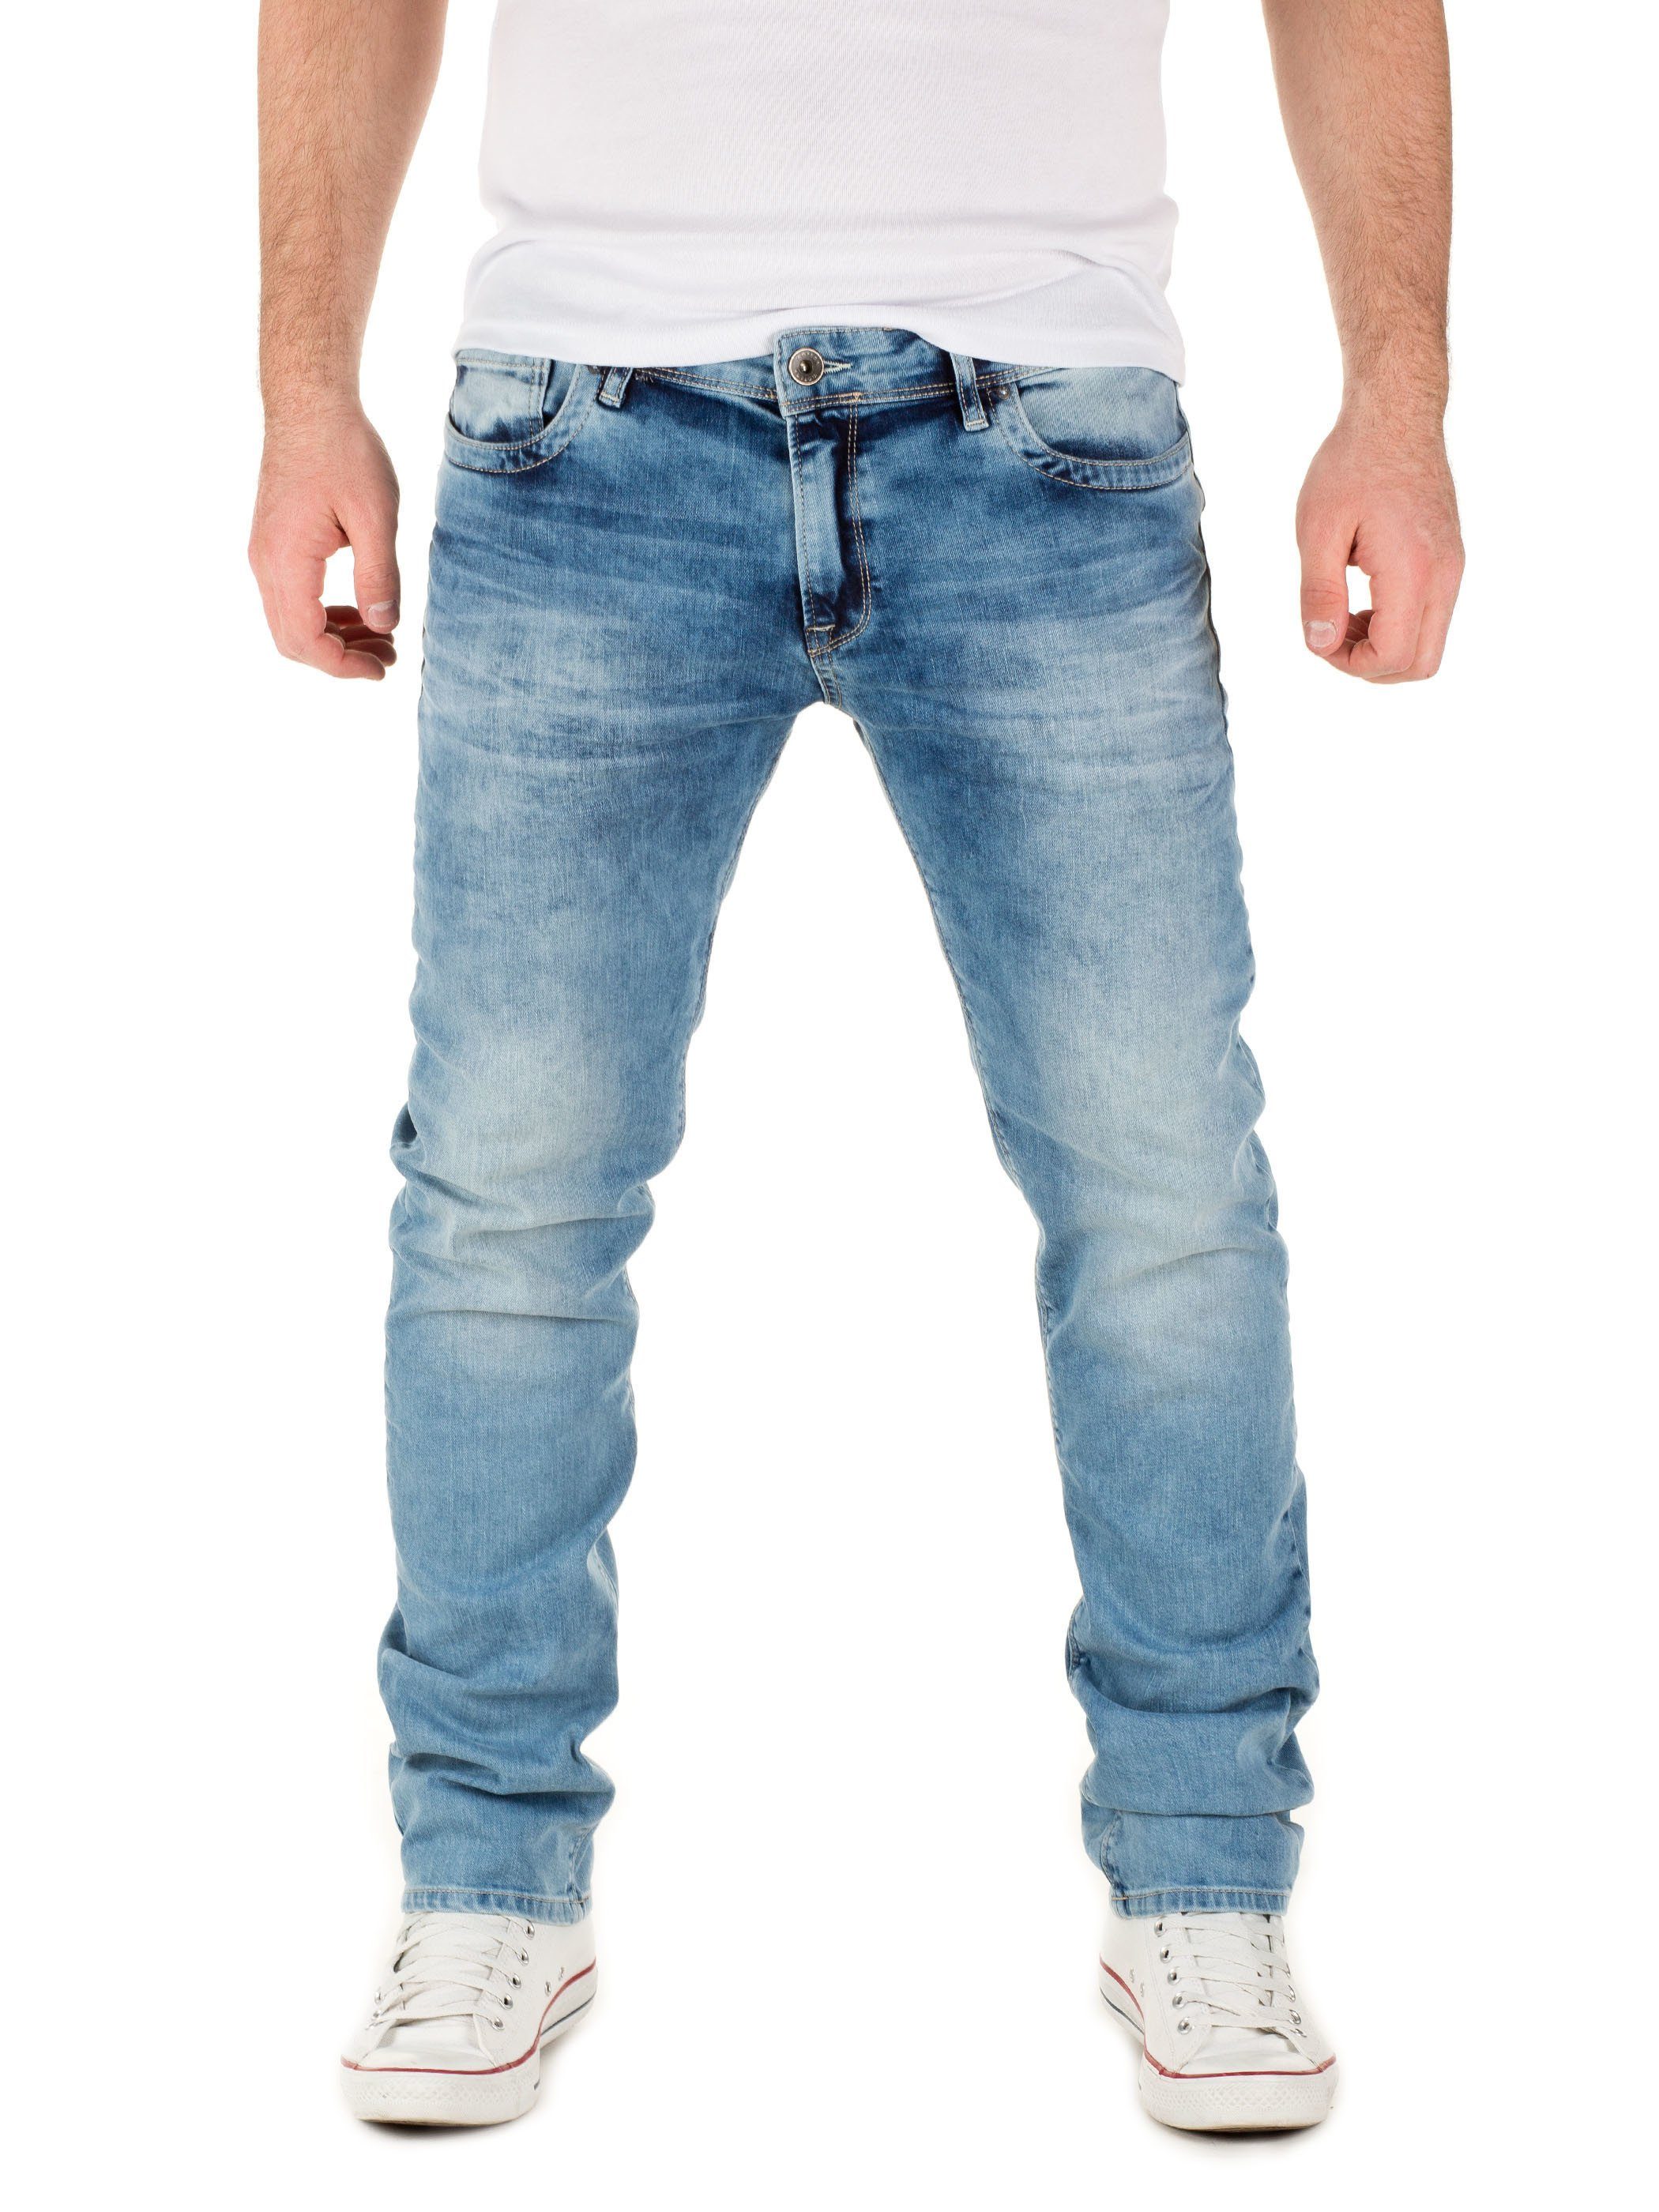 WOTEGA Slim-fit-Jeans WOTEGA - Jeans Pete Herren Jeans mit Stretchanteil 5-Pocket-Style Blau (forever blue 164019)